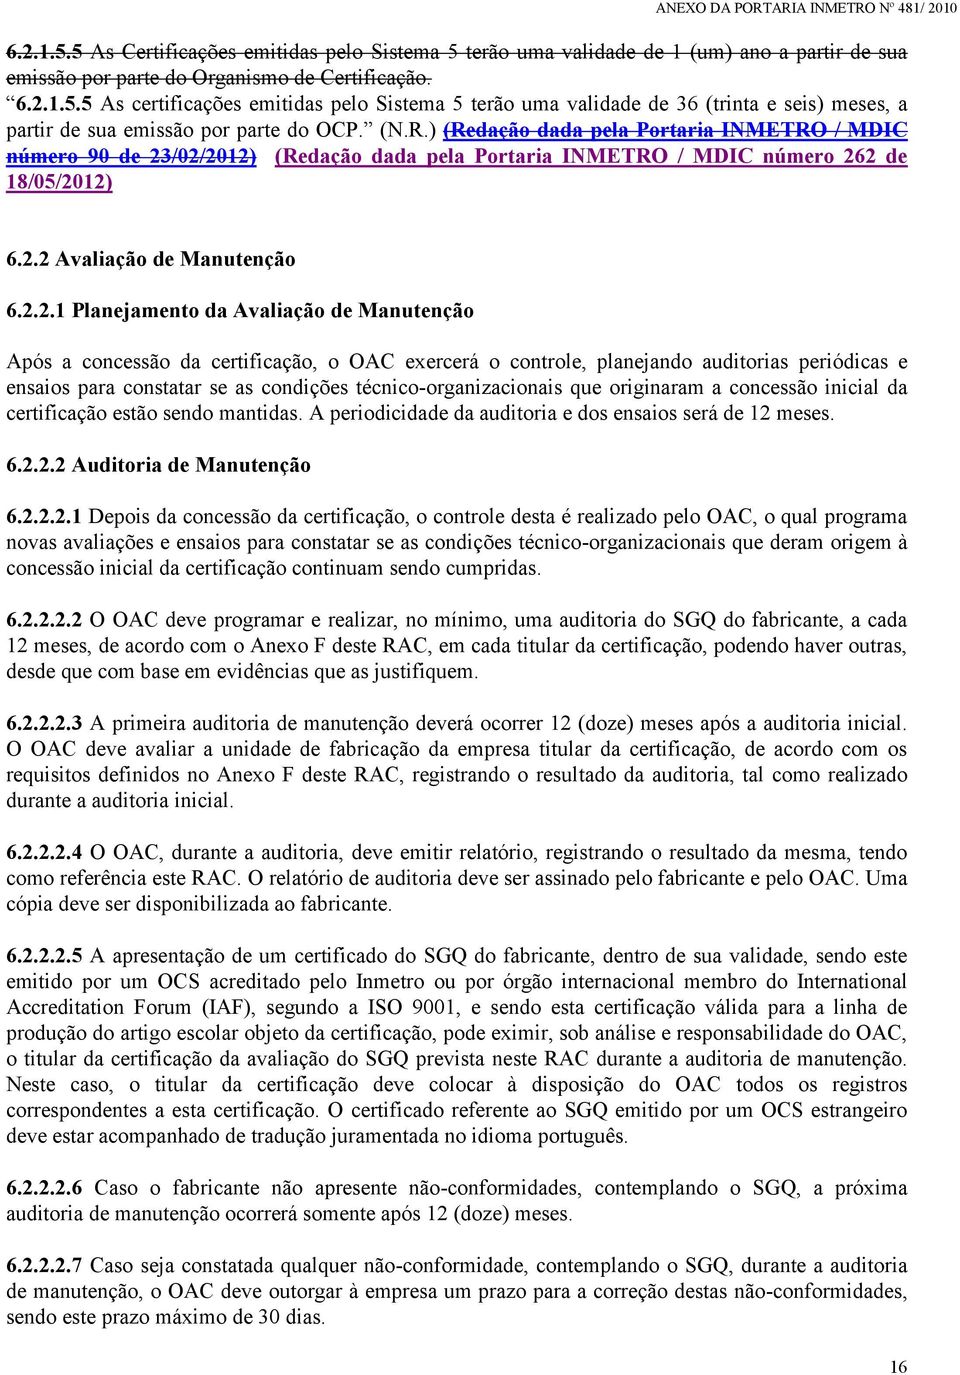 /02/2012) (Redação dada pela Portaria INMETRO / MDIC número 262 de 18/05/2012) 6.2.2 Avaliação de Manutenção 6.2.2.1 Planejamento da Avaliação de Manutenção Após a concessão da certificação, o OAC